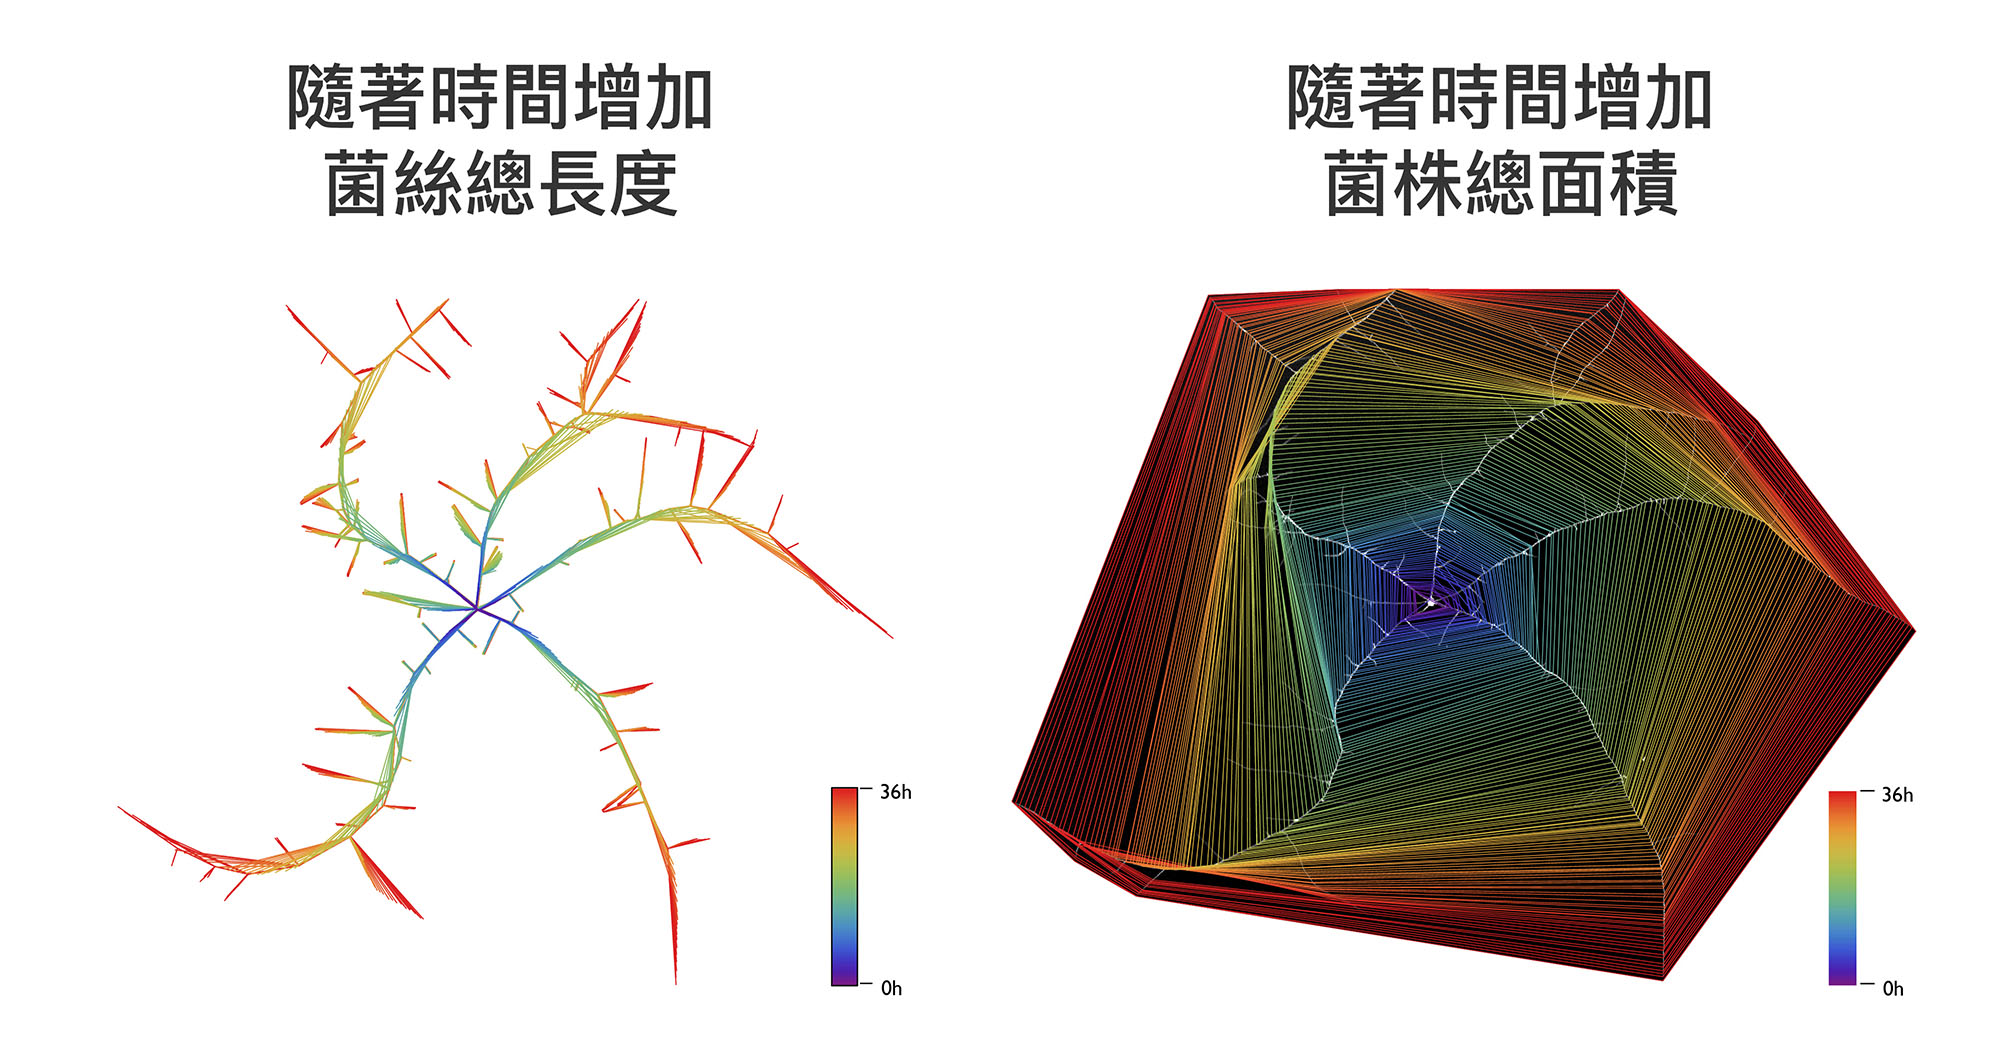 薛雁冰團隊發展的電腦視覺技術，可以明確地計算真菌隨著時間生長的菌絲長度、菌株面積。圖│ Guillermo Vidal-Diez de Ulzurrun,Tsung-Yu Huang,Ching-Wen Chang,Hung-Che Lin,Yen-Ping Hsueh(2019) Fungal feature tracker (FFT): A tool for quantitatively characterizing the morphology and growth of filamentous fungi. PLoS Comput Biol. 15 (10) : e1007428